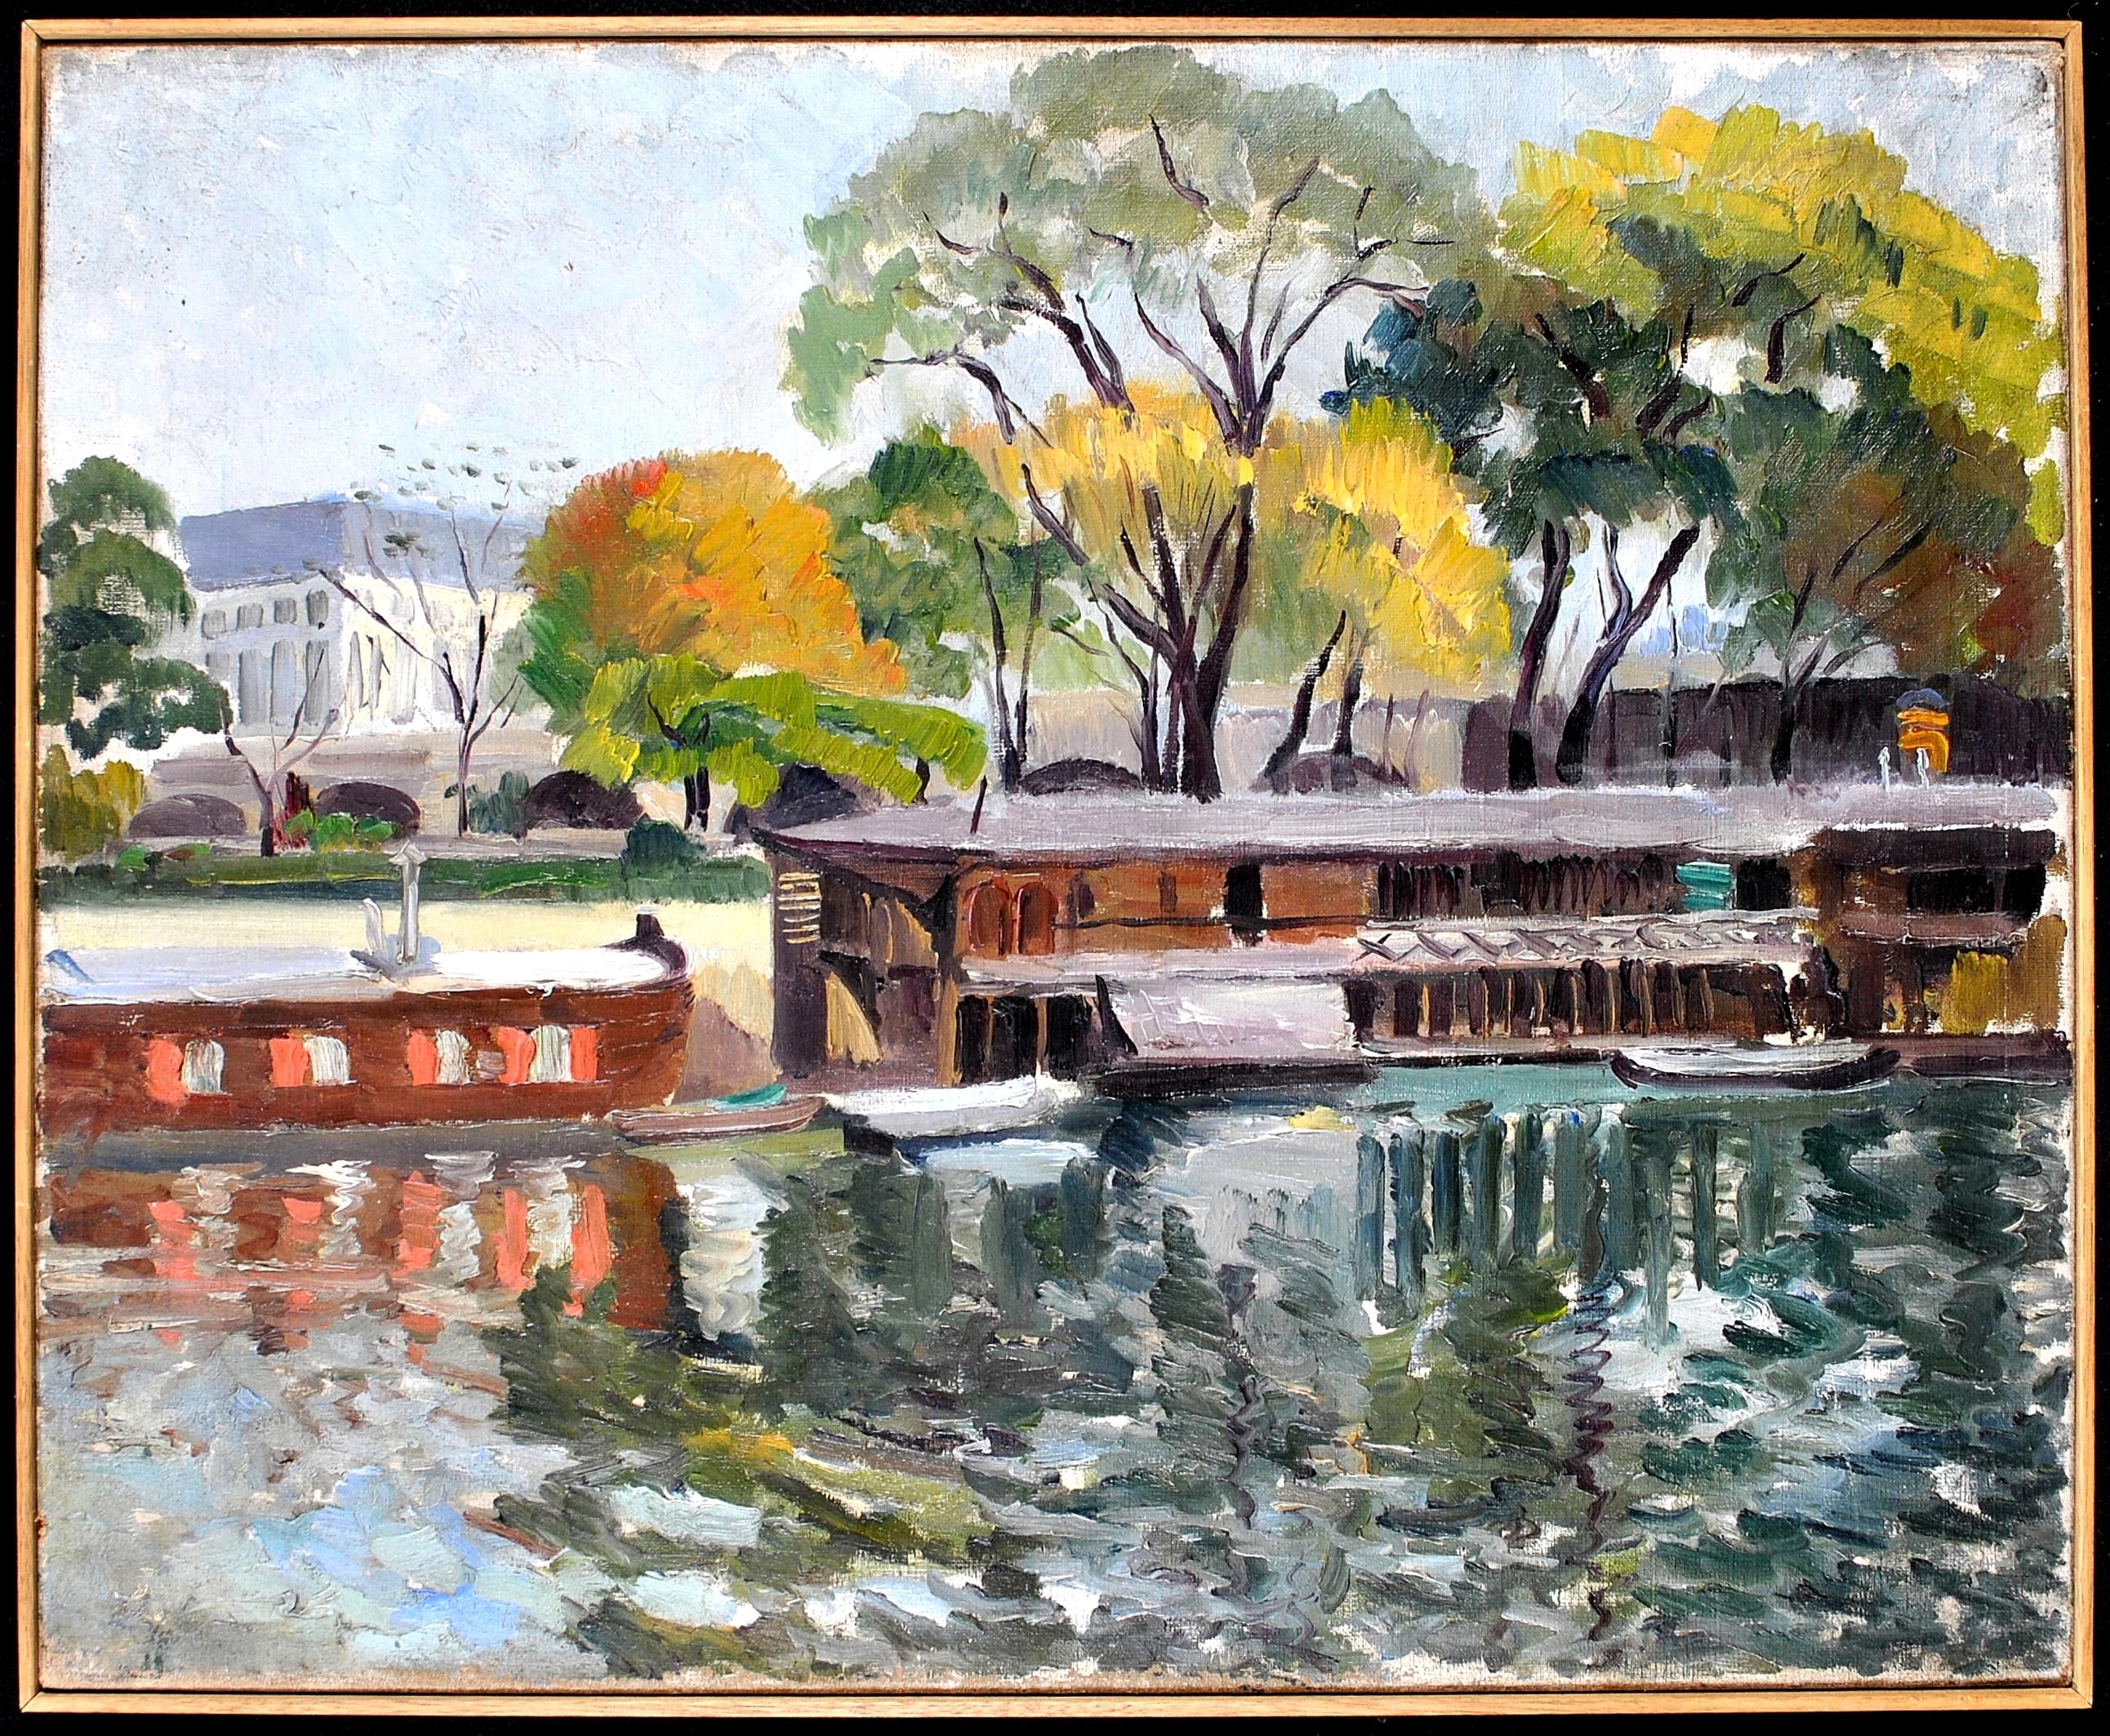 Boats on a River - Peinture à l'huile impressionniste française du milieu du 20e siècle